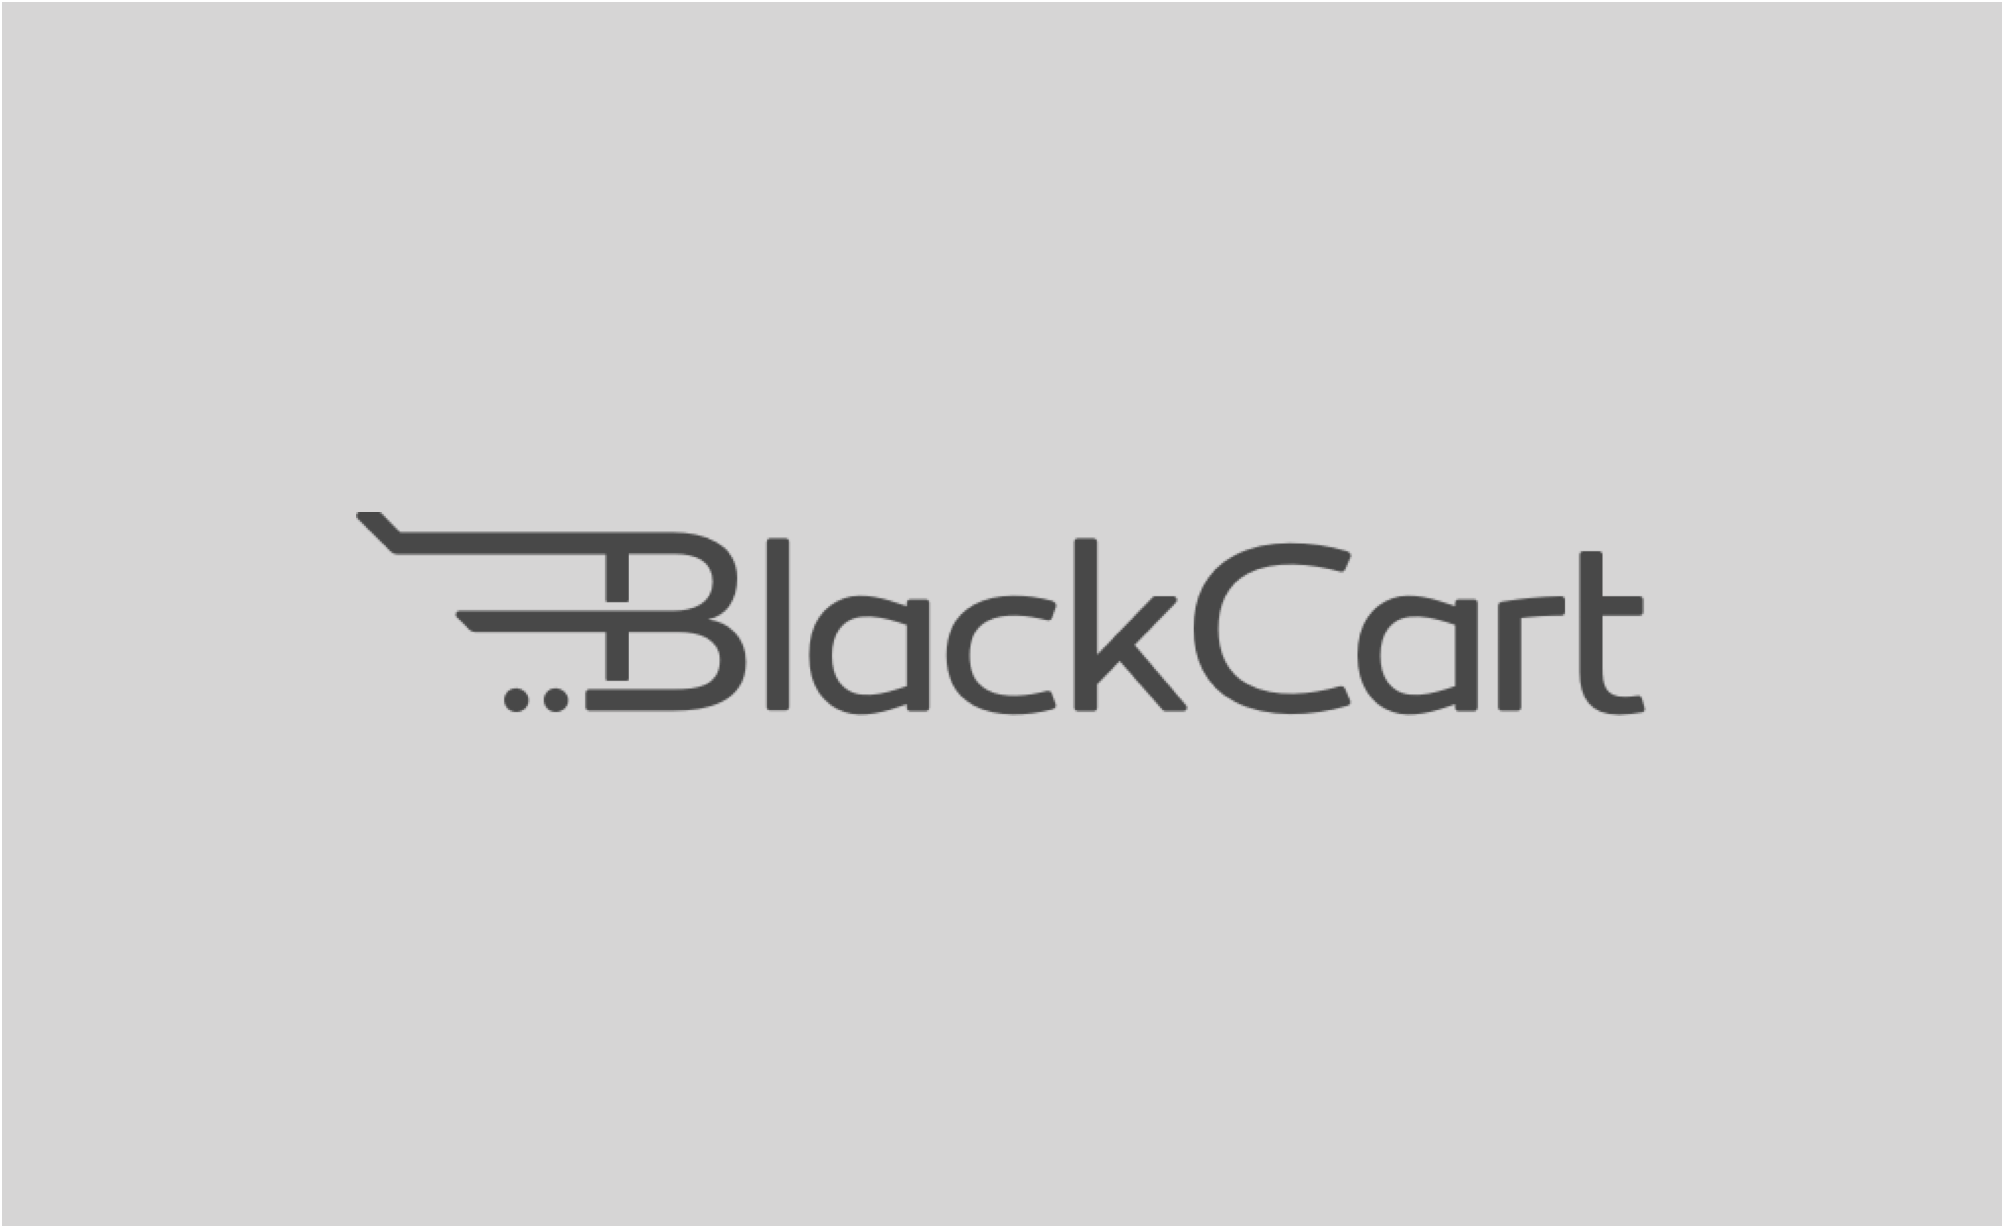 BlackCart